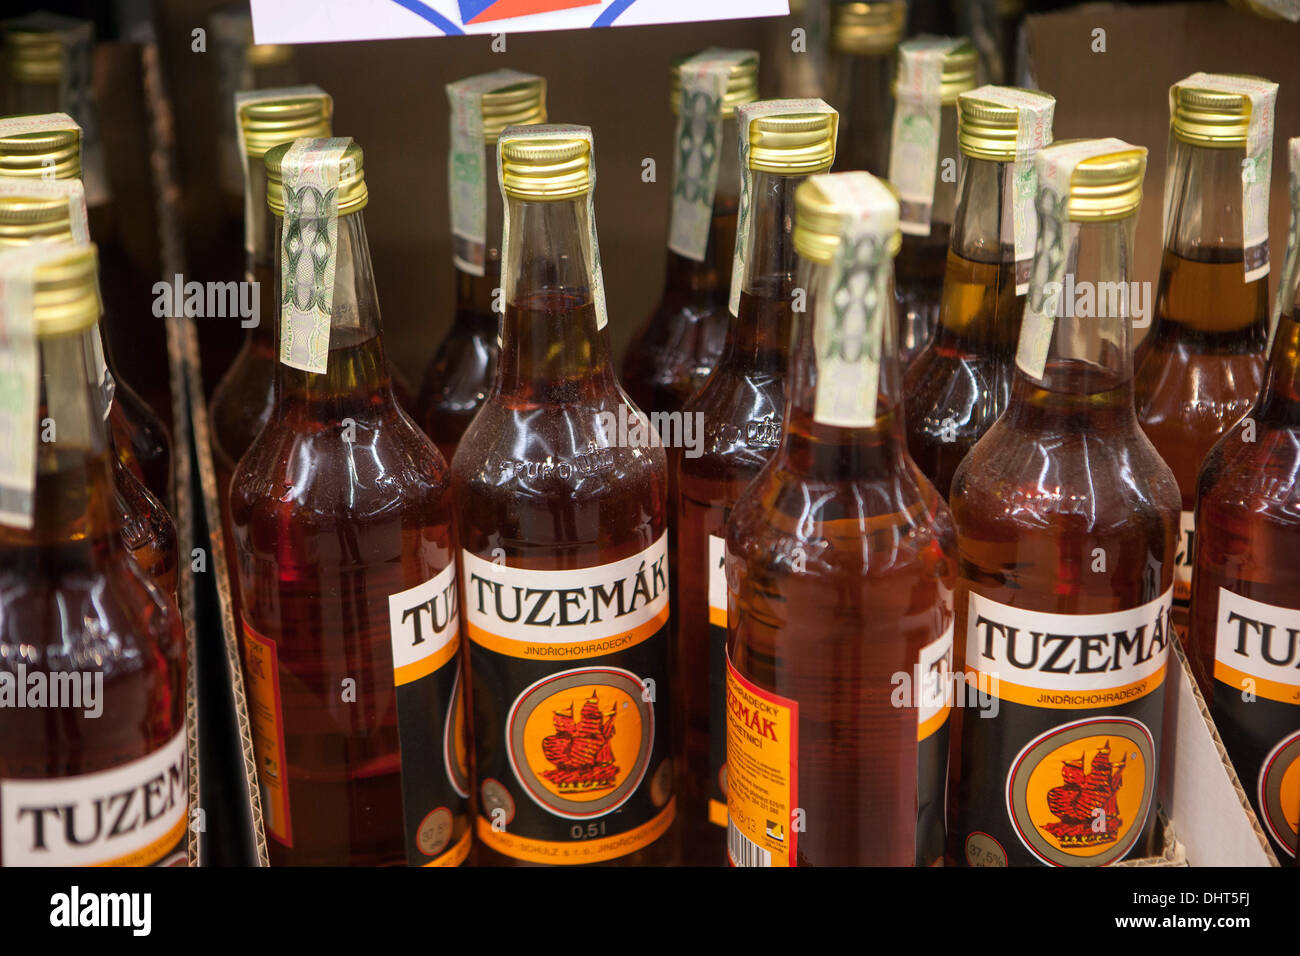 Tuzemak ist ein tschechischer Spirituosen-Supermarkt-Regal Stockfoto